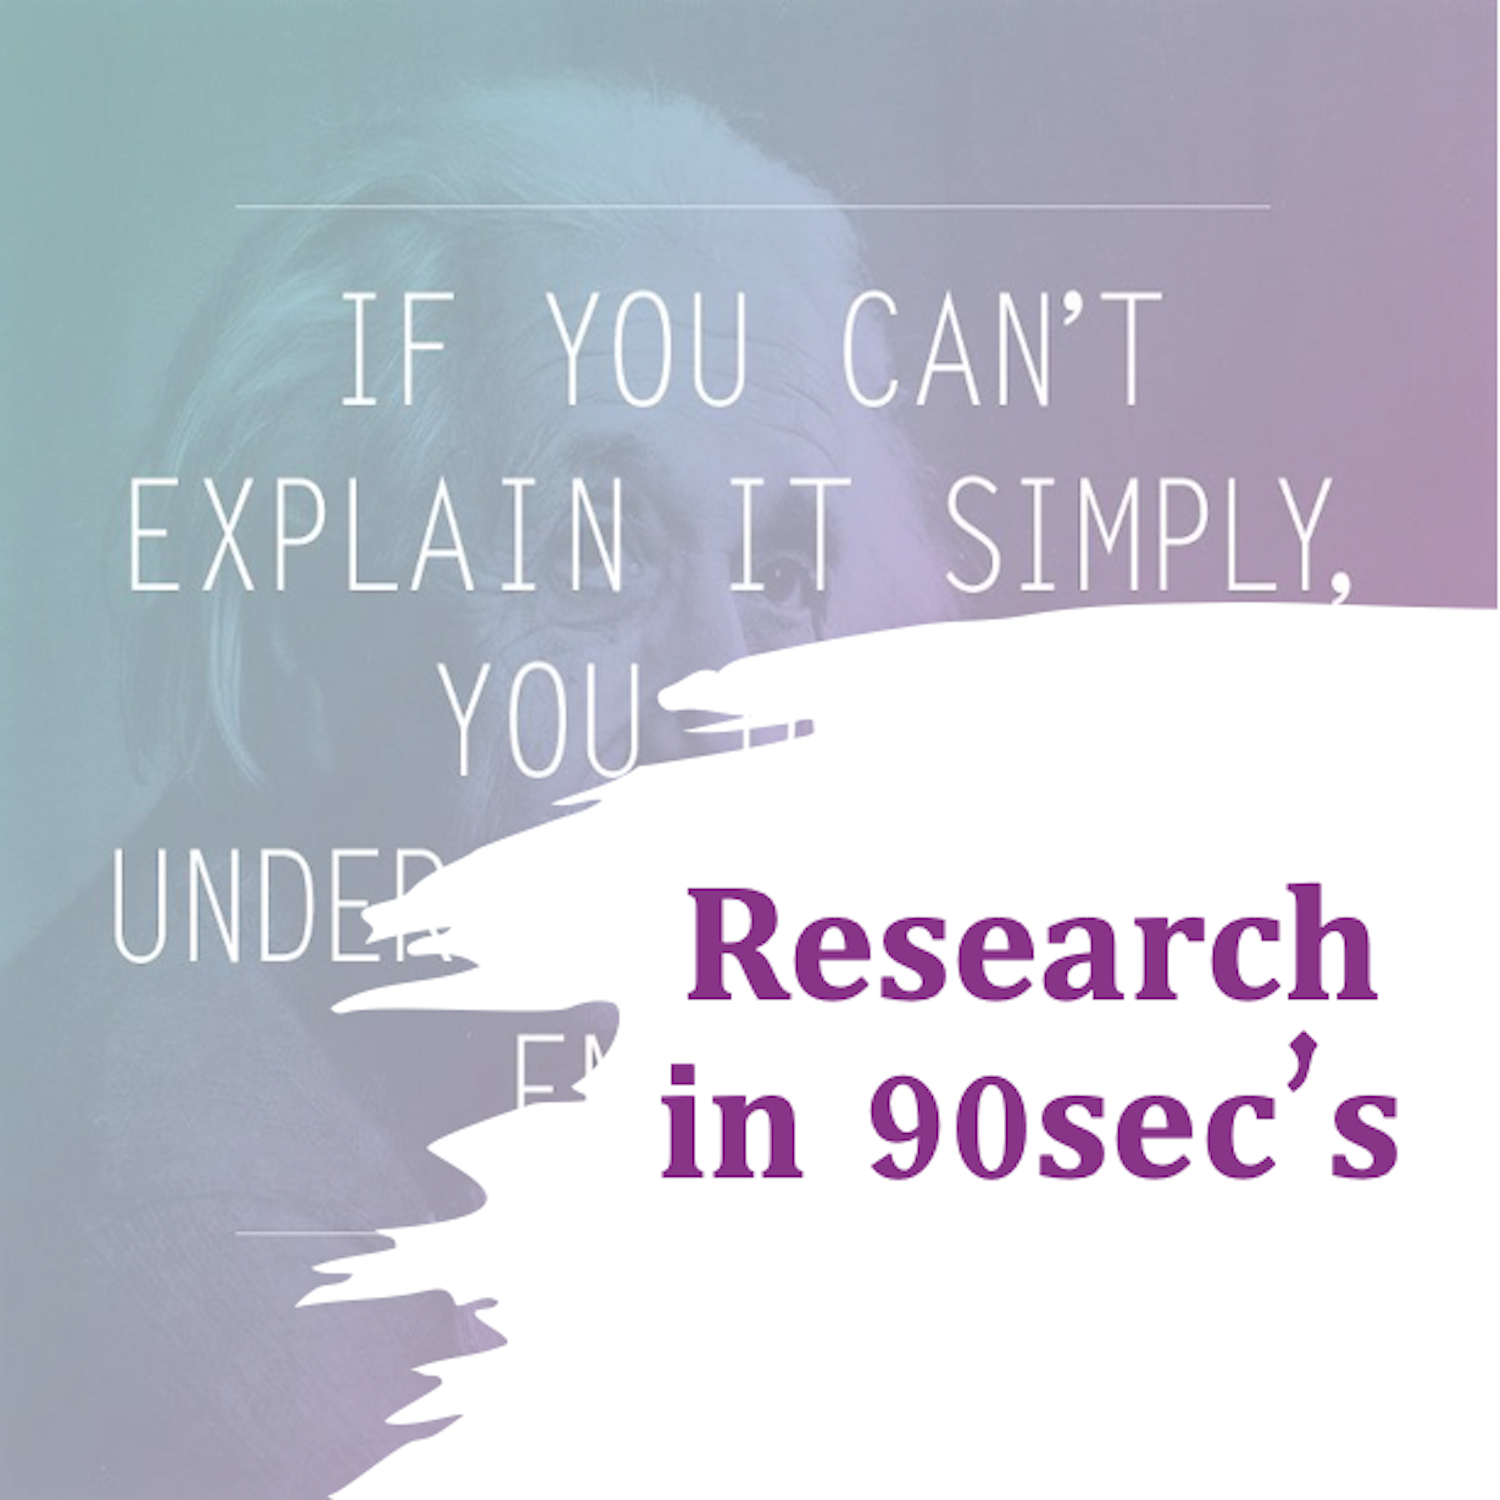 Research in 90sec's